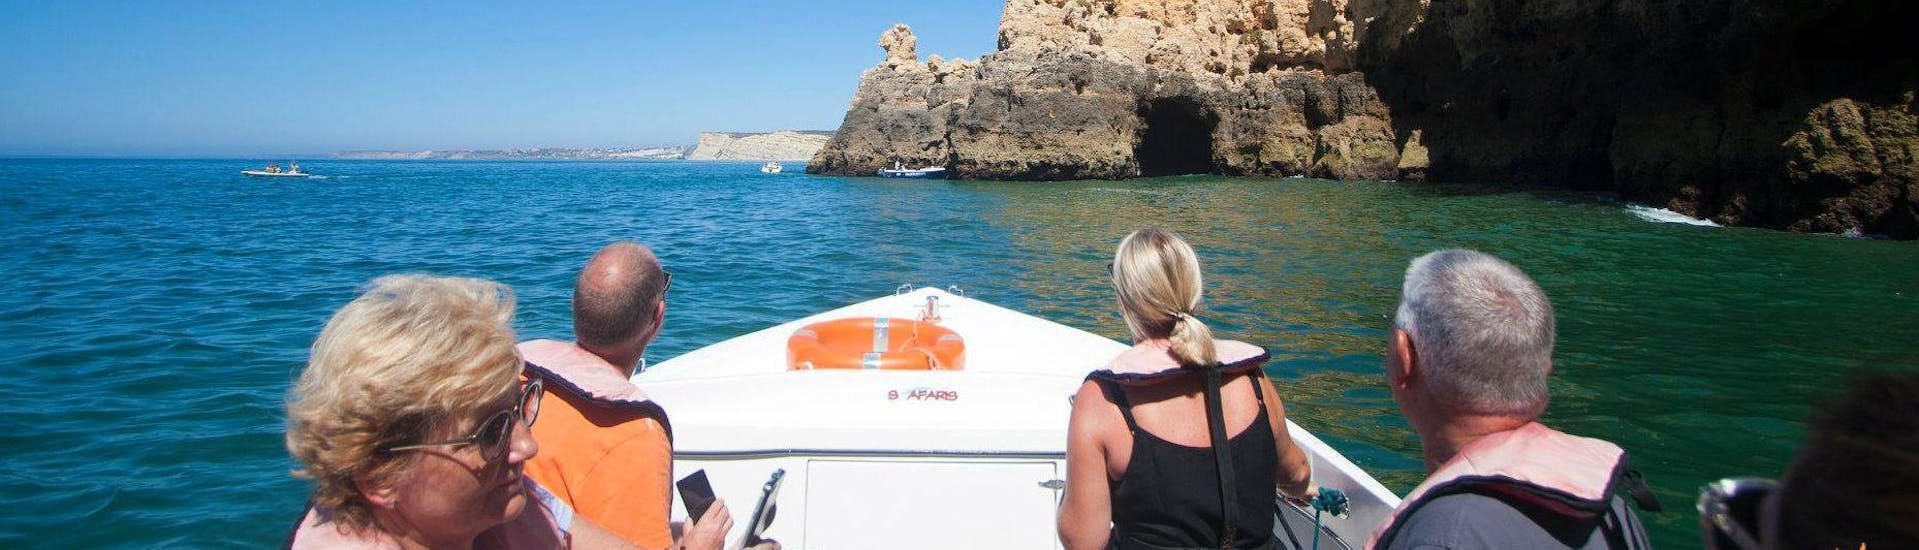 Durante il giro in barca a Ponta da Piedade da Lagos con Seafaris Algarve, i passeggeri si godono la vista delle incredibili formazioni rocciose.